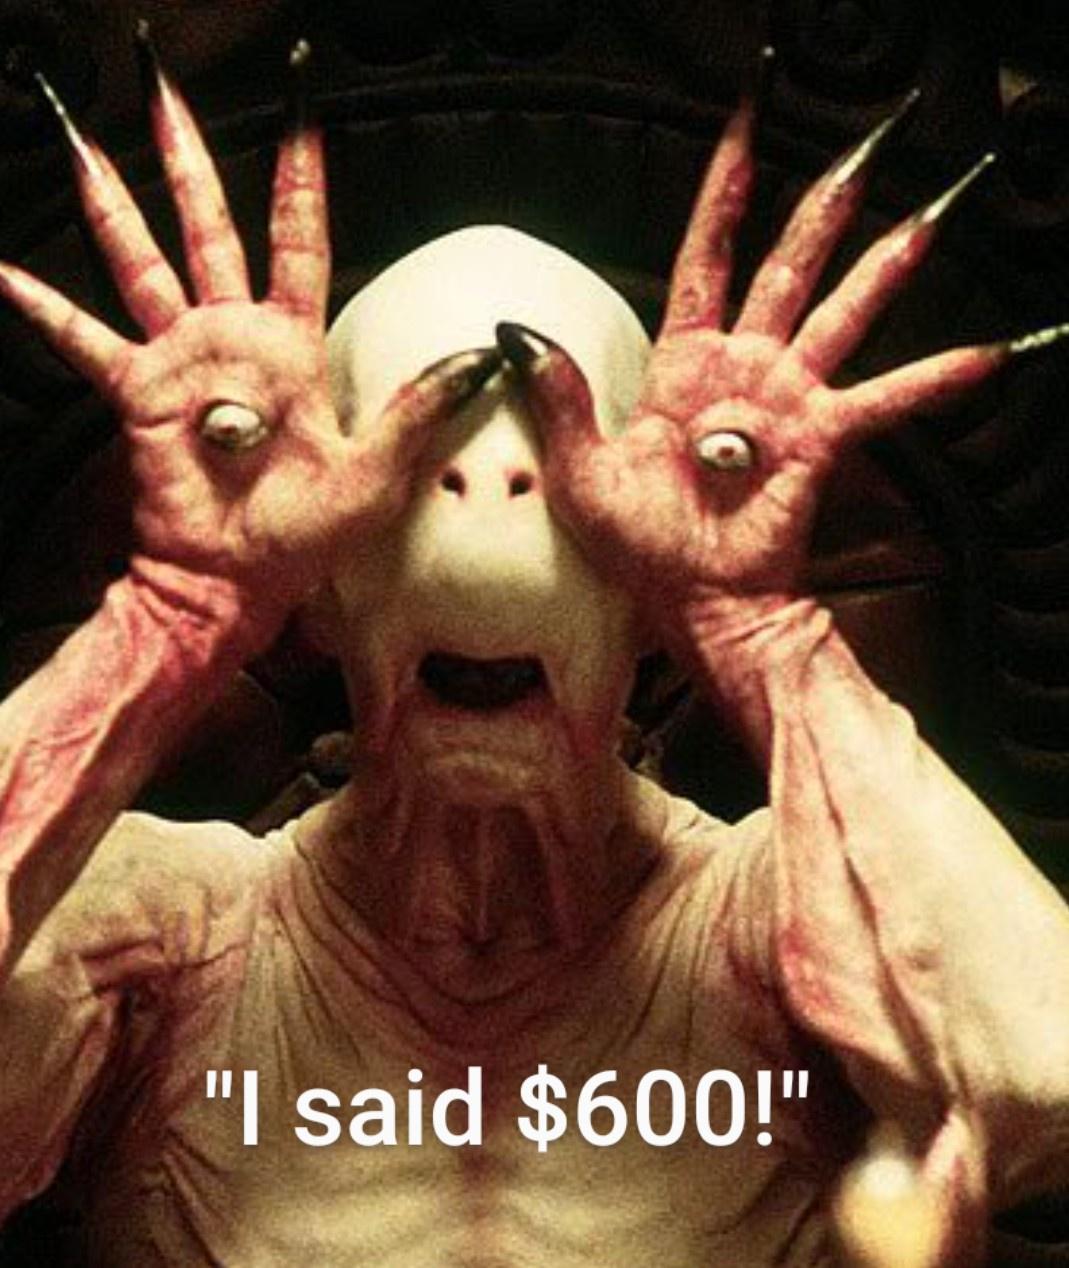 pan's labyrinth - "I said $600!"